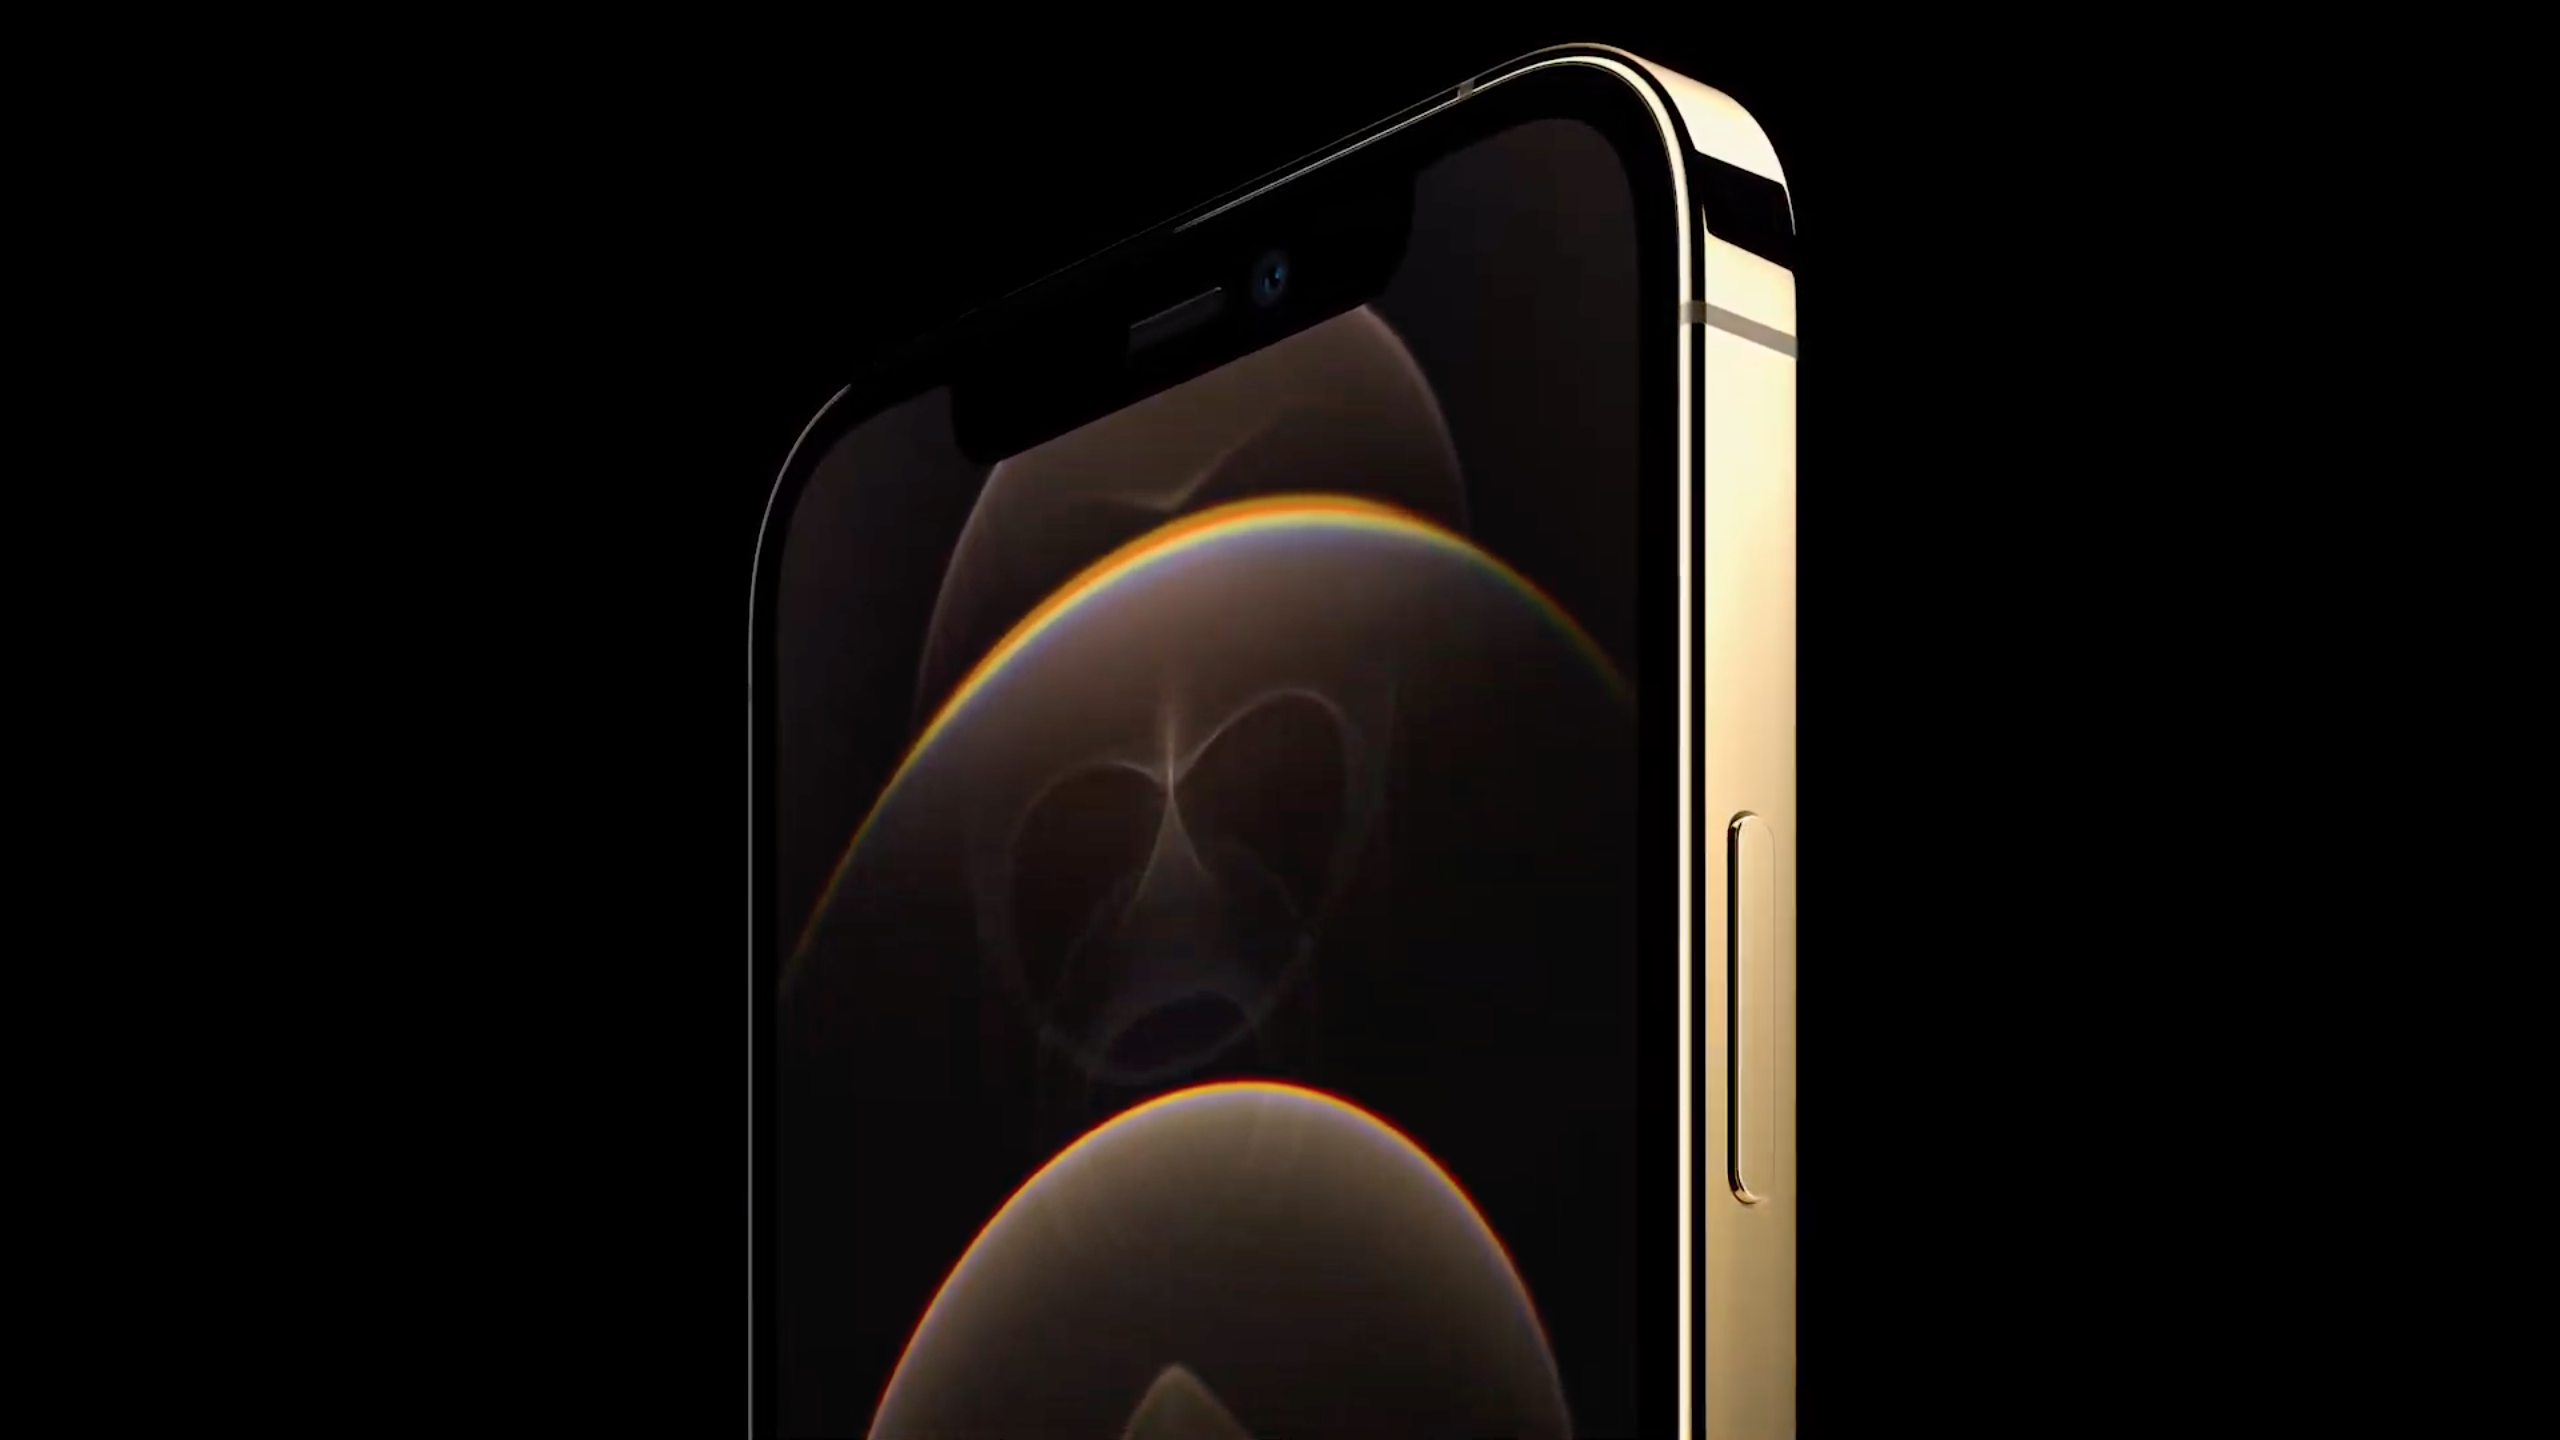 Với nhiều tính năng và chức năng mới lạ, iPhone 12 Pro Max là lựa chọn hoàn hảo cho những ai yêu thích sự sang trọng. Bạn có muốn biết thêm về những hình nền hoàn toàn mới trên iPhone 12 Pro Max? Hãy khám phá ngay!